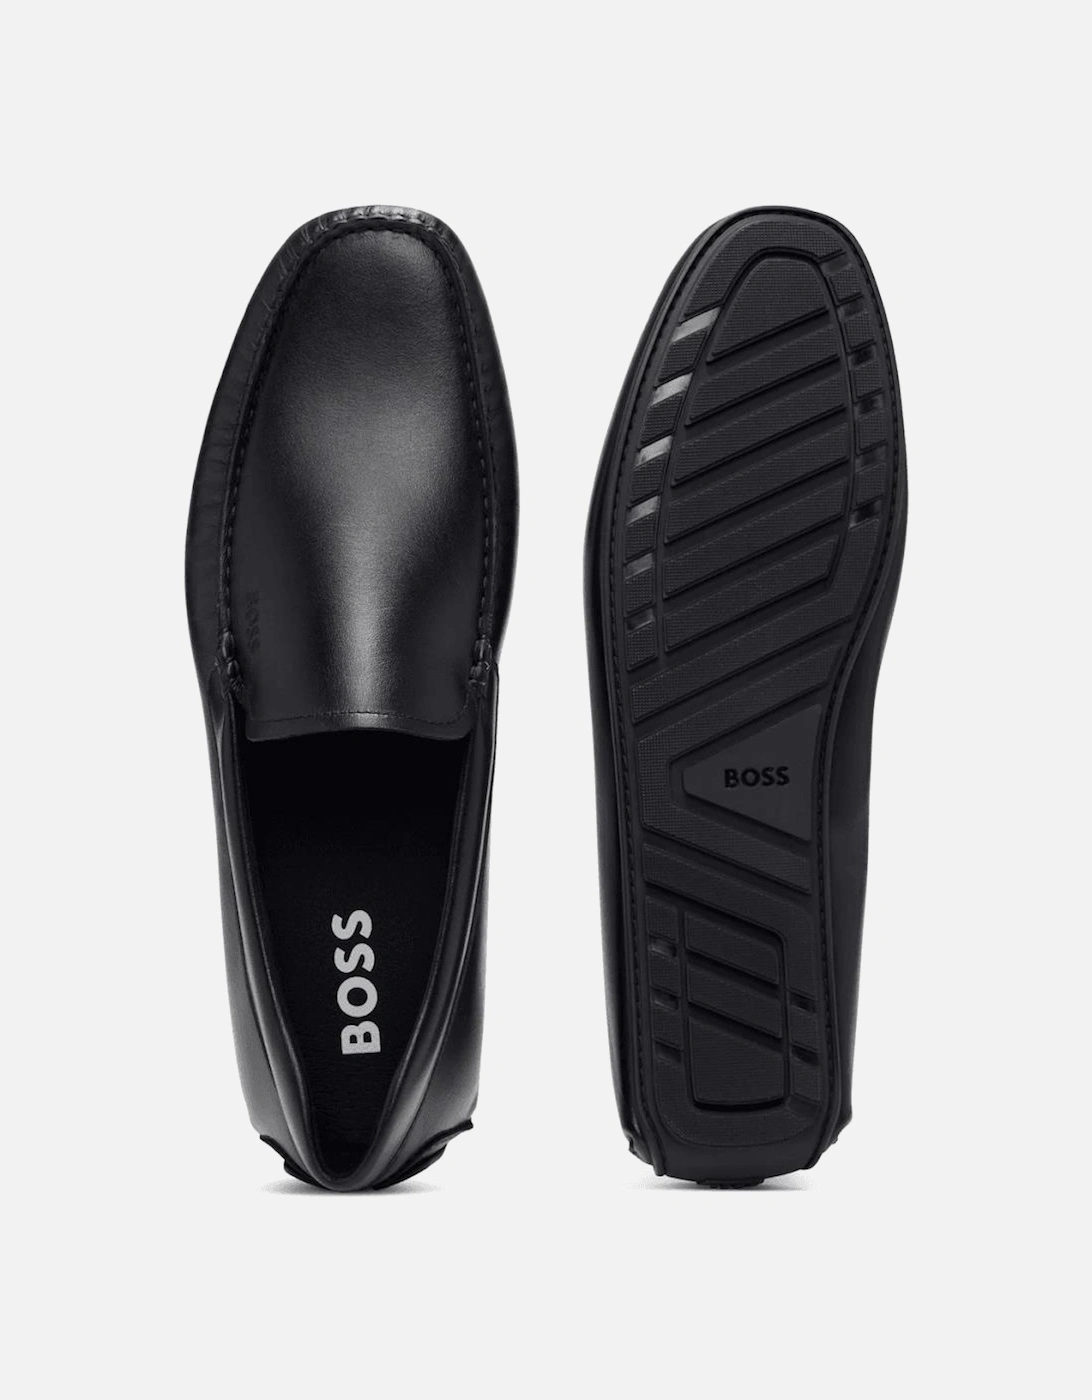 Noel_Mocc Leather Moccasin Black Shoe